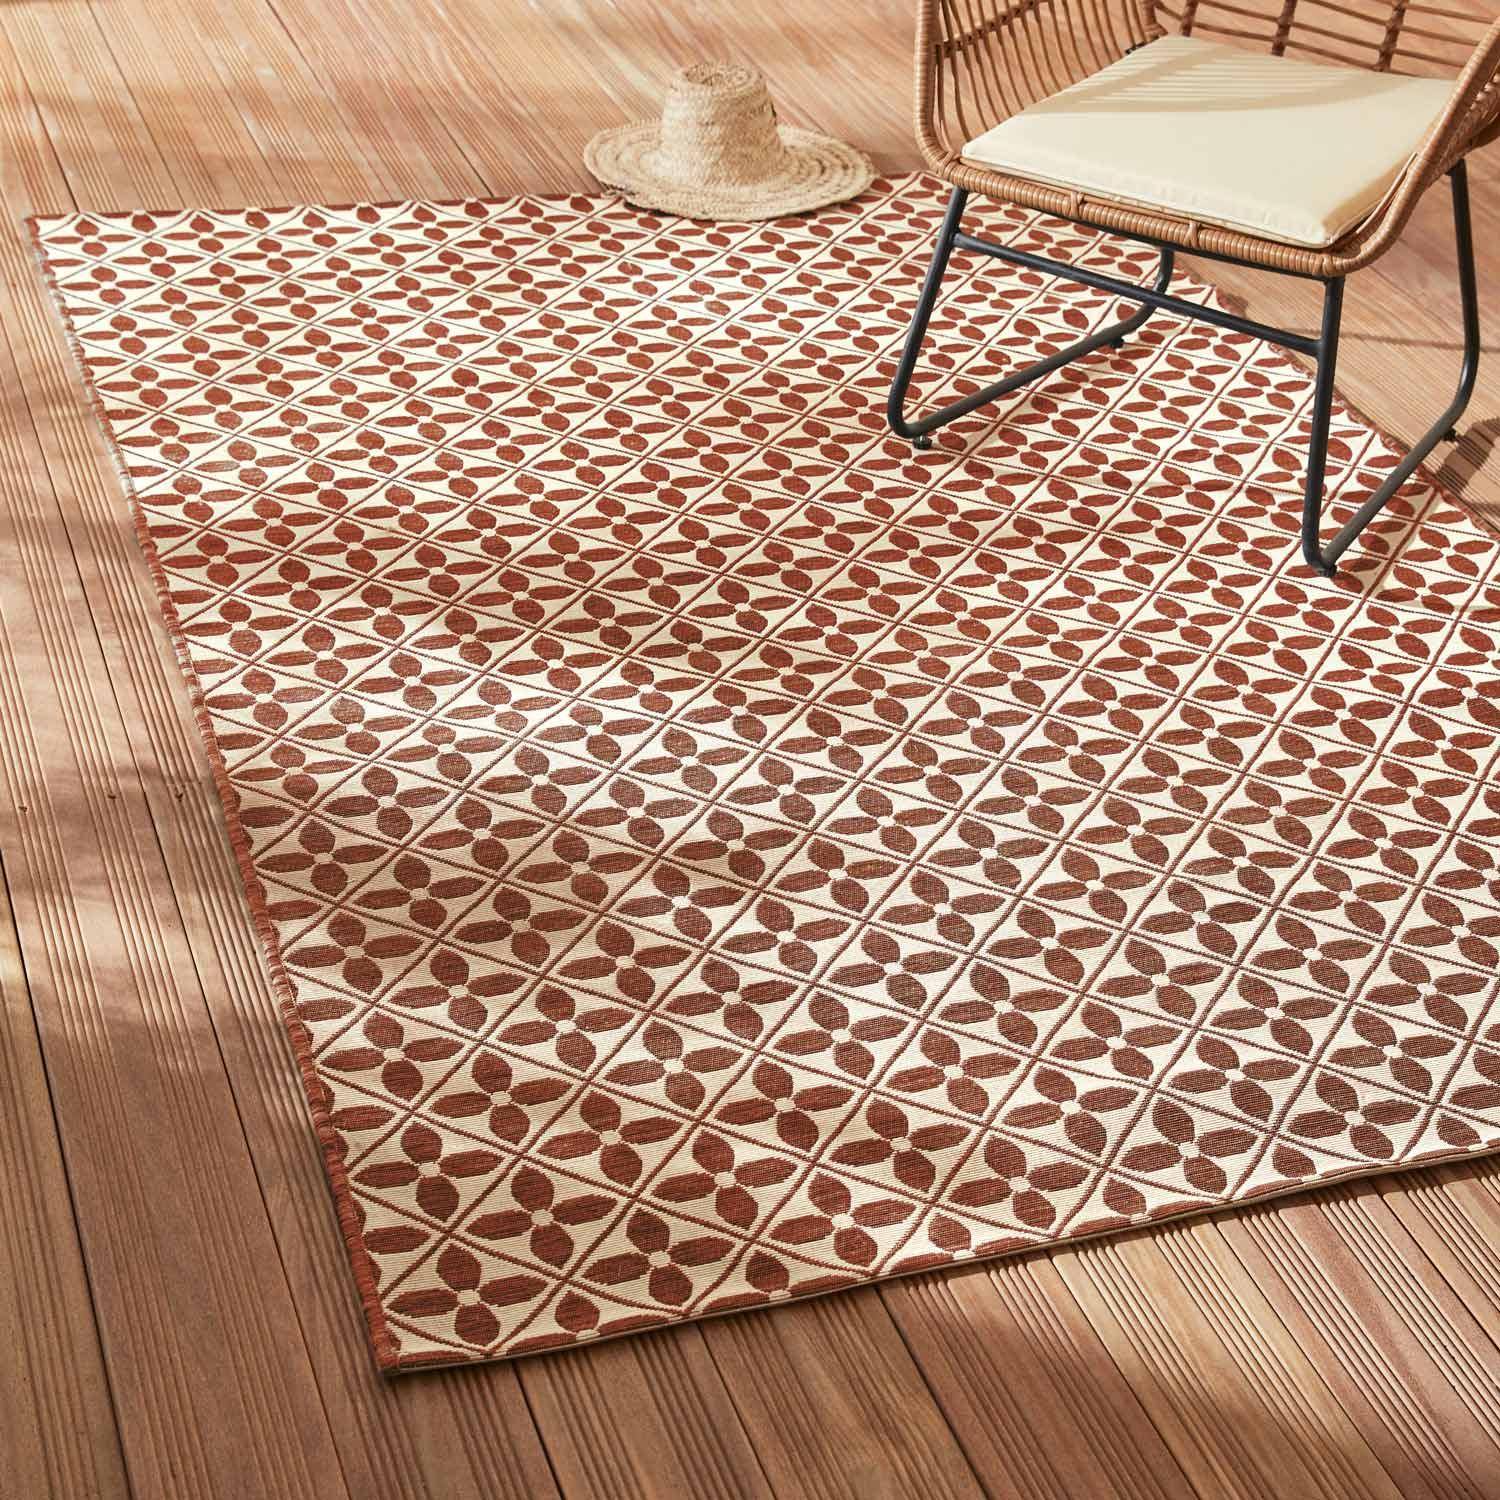 Outdoor rug - 160x230cm - tile print, rectangular, indoor/outdoor use - Terracotta Photo1